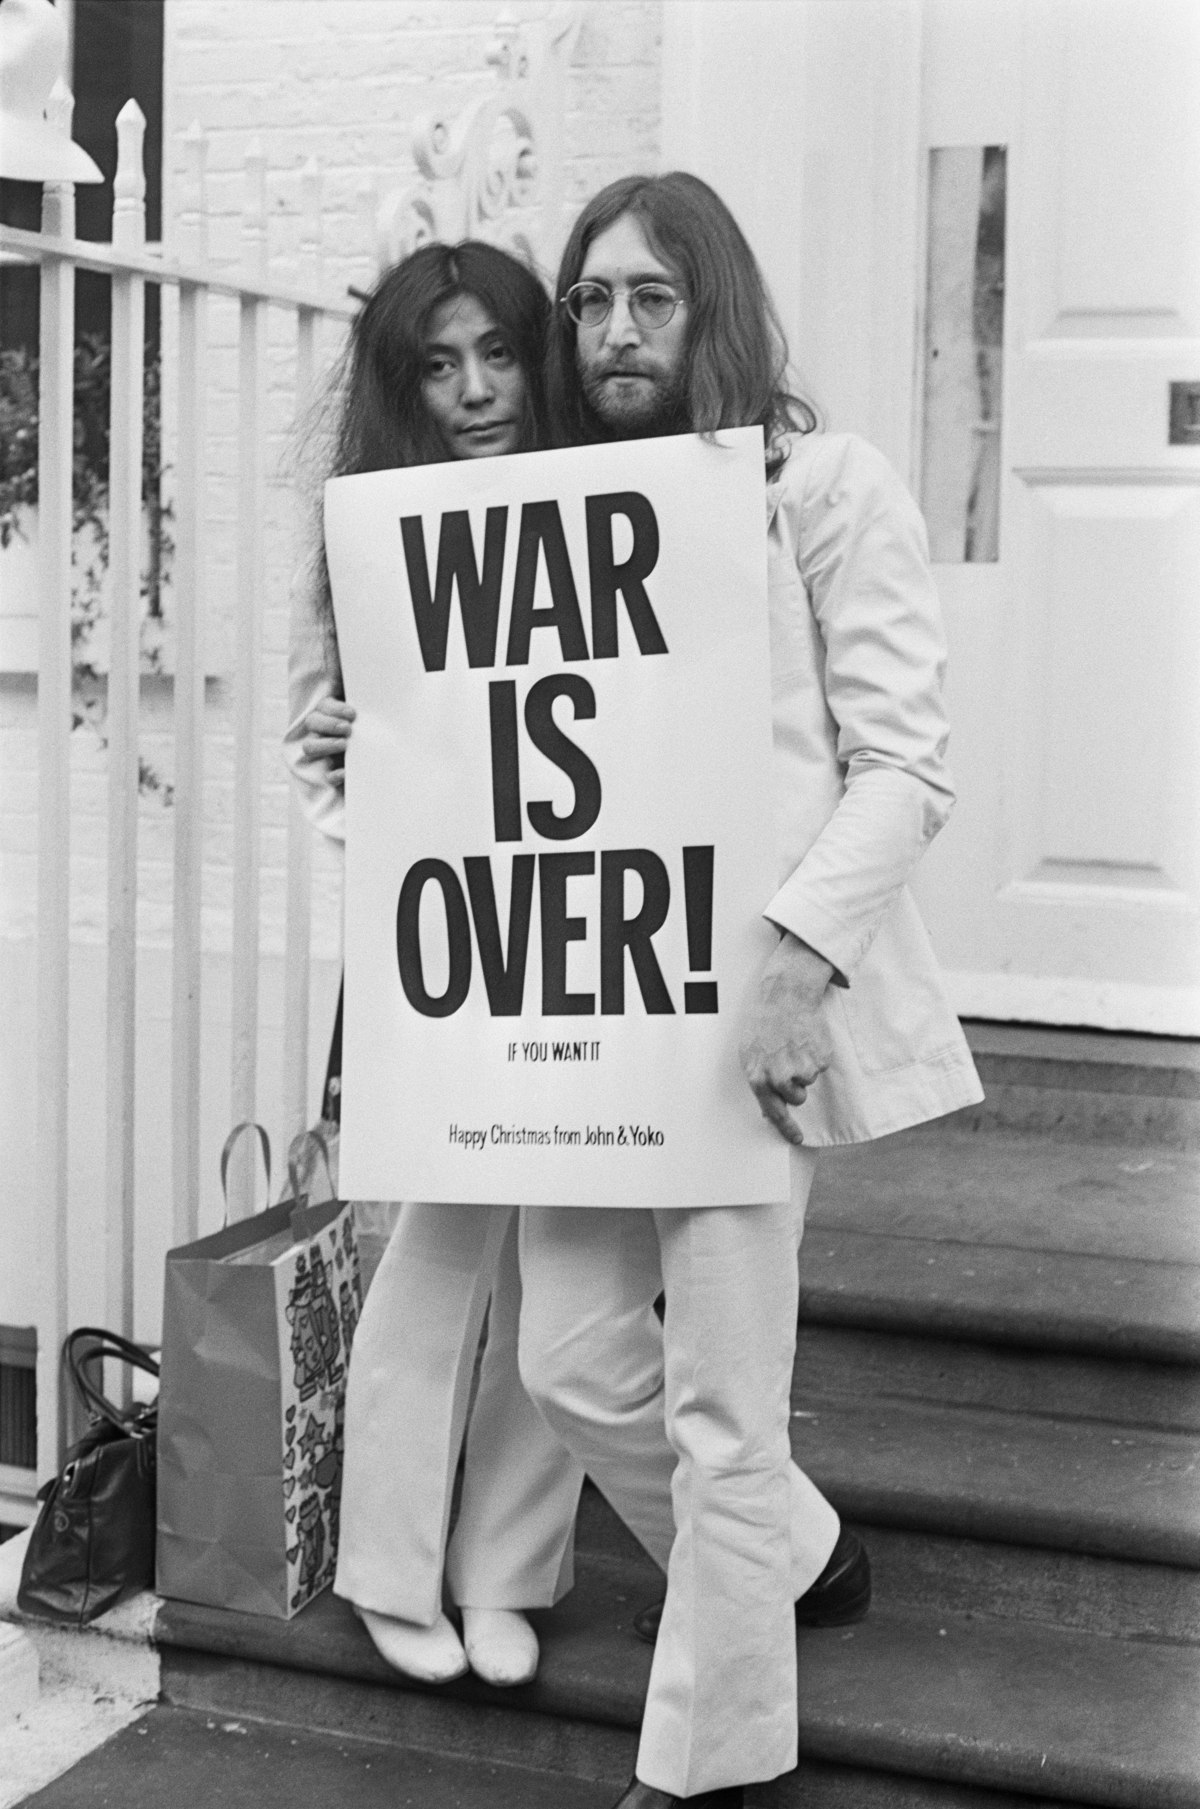 John Lennon & Yoko Ono posieren mit einem Poster ihrer berühmten "War is over (if you want it)" Kampagne in London im Dezember 1969. (Photo by Frank Barratt/Keystone/Getty Images)